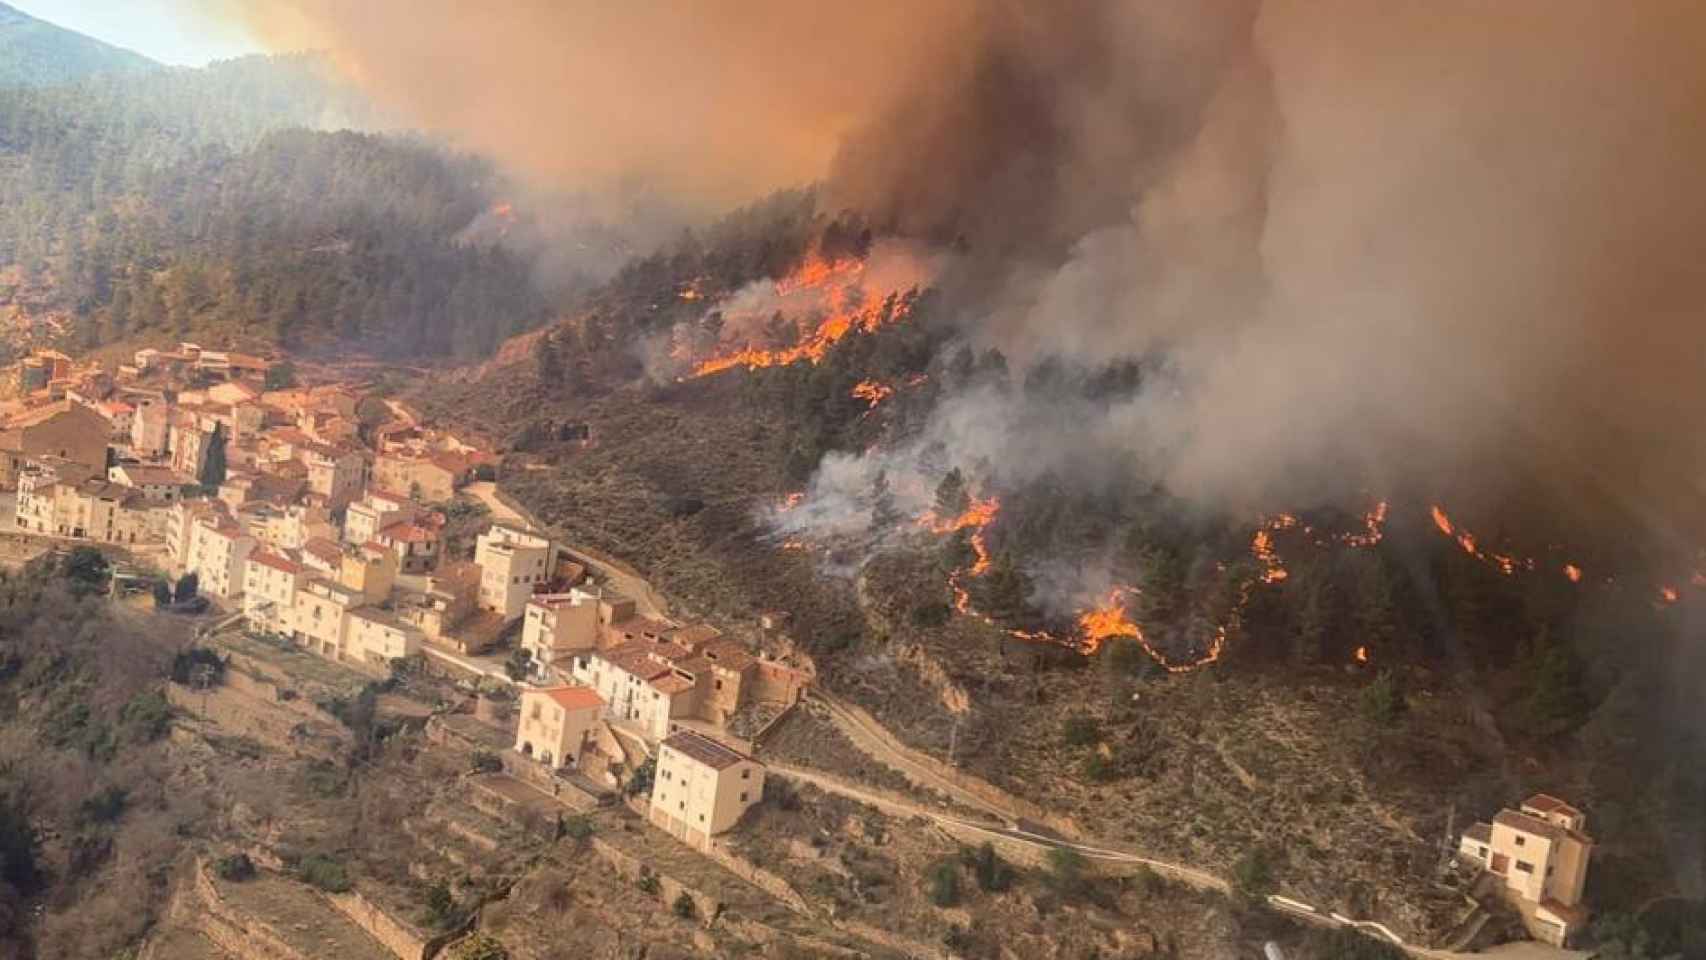 Montán, el pueblo de Castellón 'comido' por el fuego que ideaba un plan para evitar más incendios